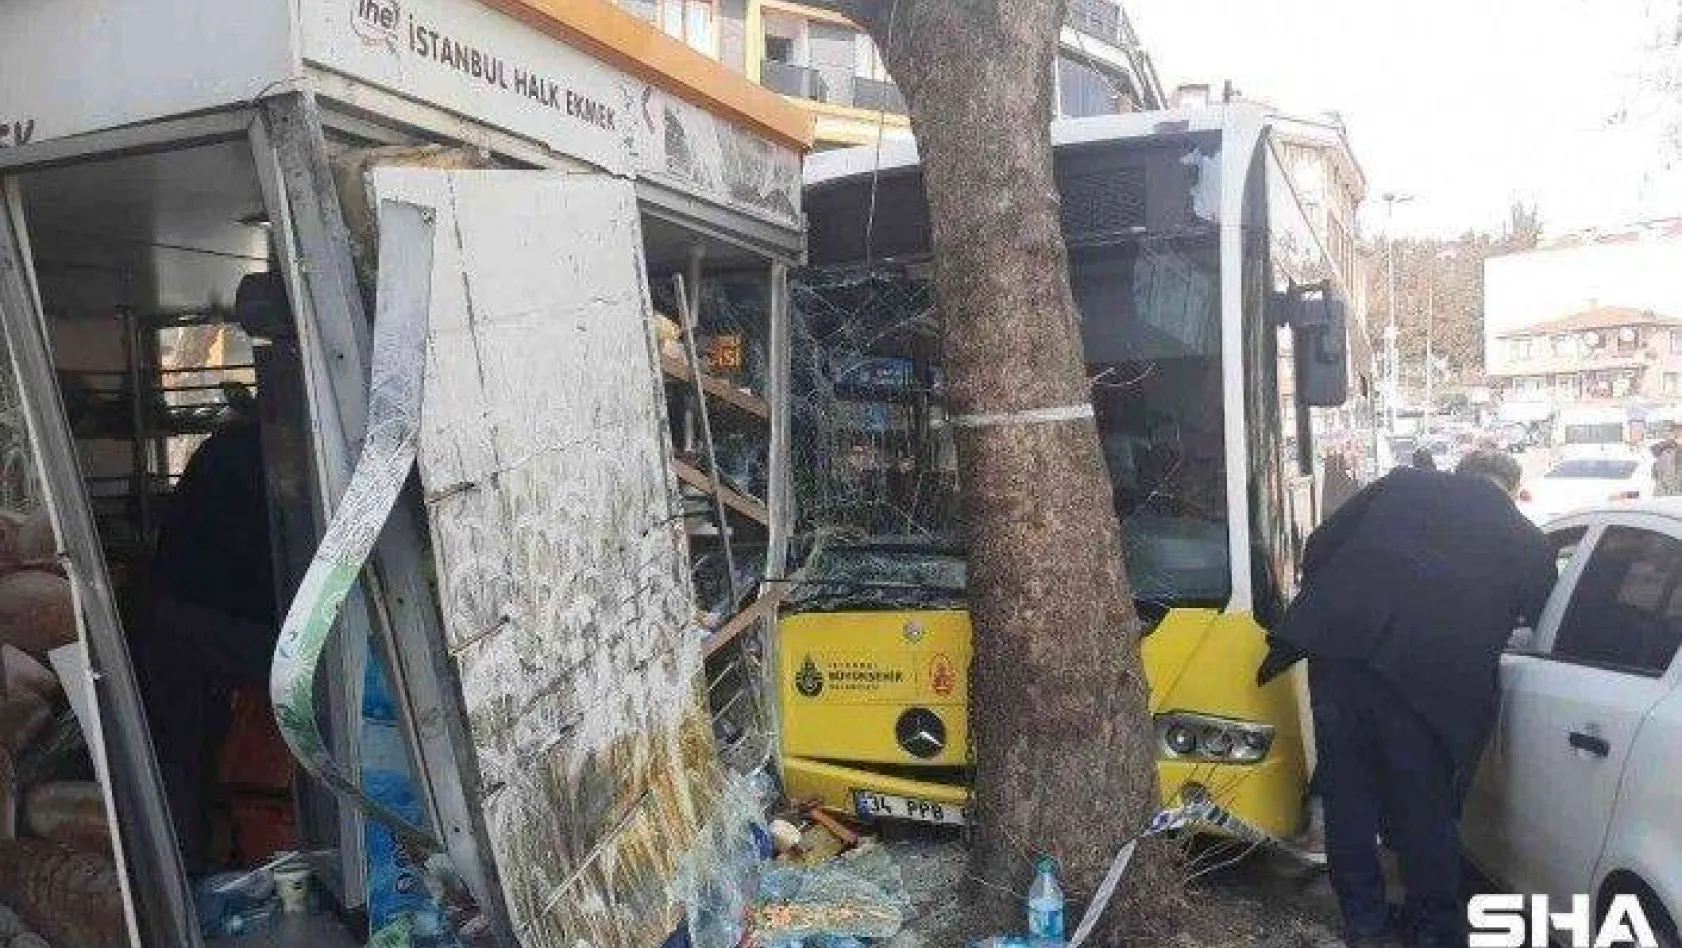 Beyoğlu'nda İETT otobüsü Halk Ekmek büfesine daldı, facianın eşiğinden dönüldü